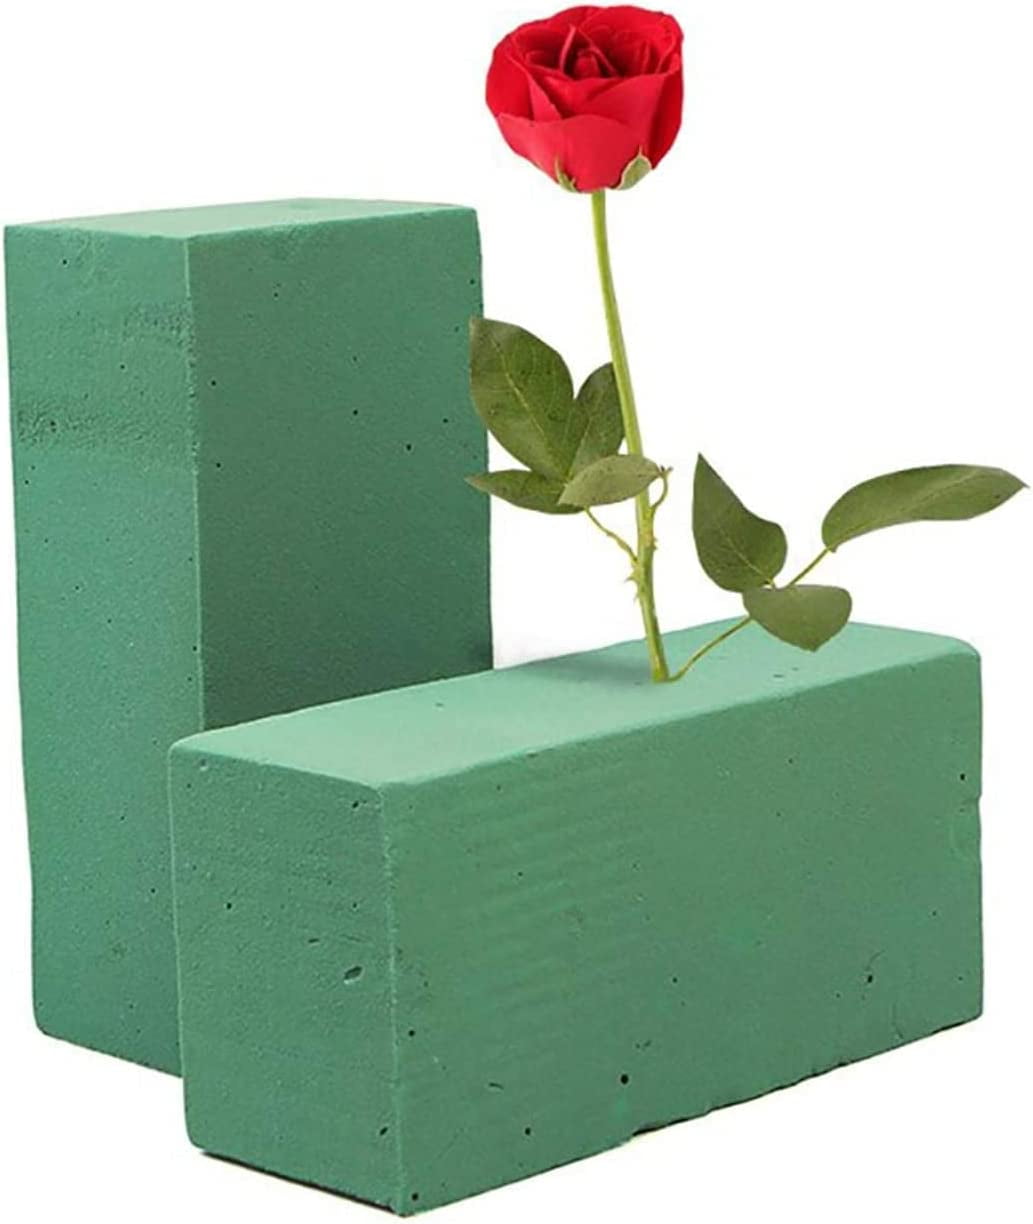  COHEALI 1pc Flower Sponge Foam Plant Foam Base Valentines Day  Decor Floral Craft Foam Floral Foam Blocks Flower Arrangement Foam Green  Sponges Flower Mud Accessories The Cross Sponge Block : Arts